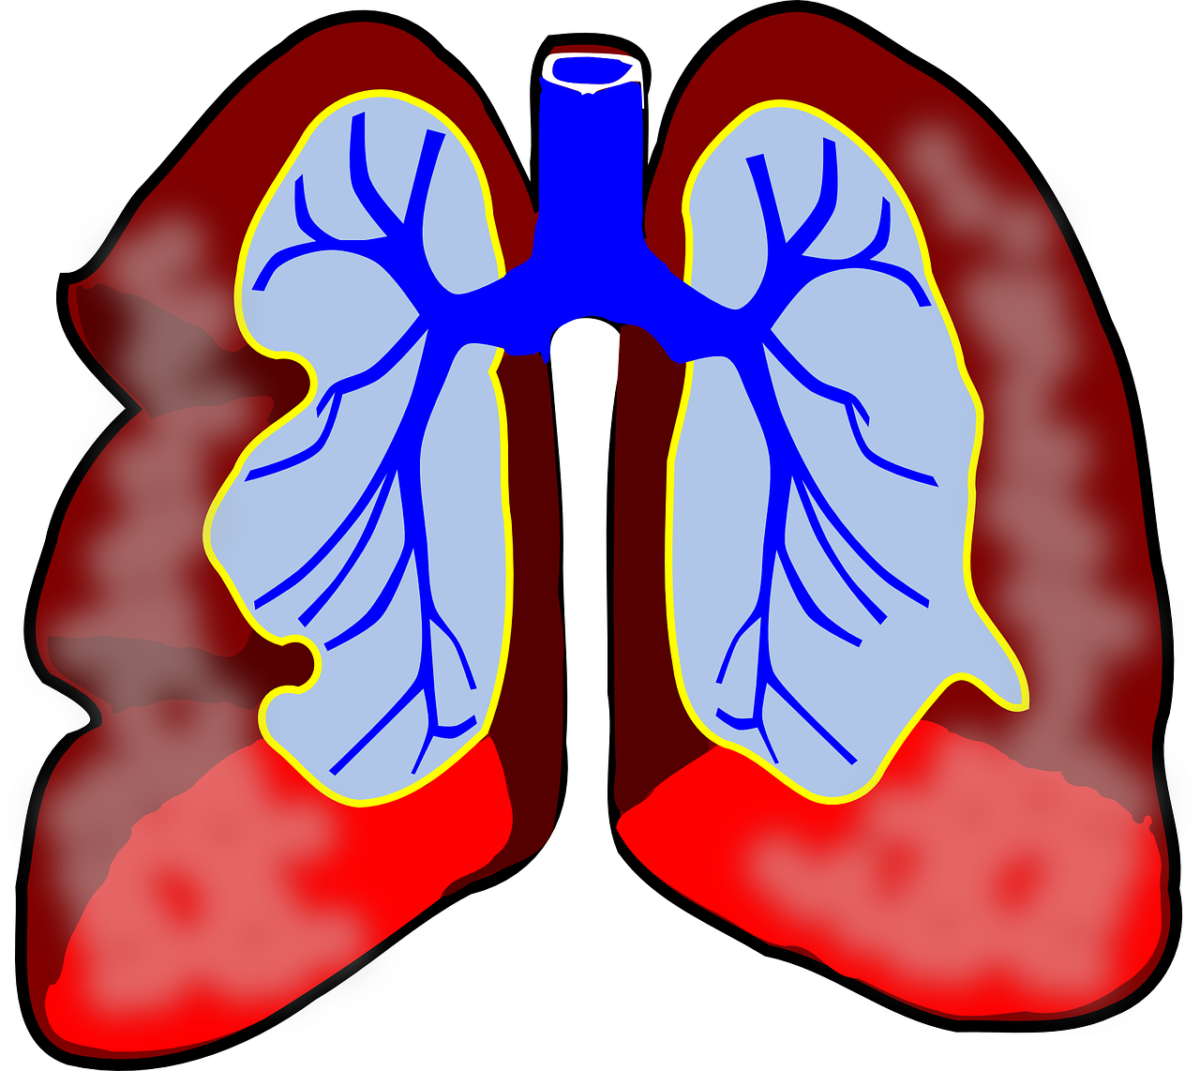 Querschnitt einer Lunge